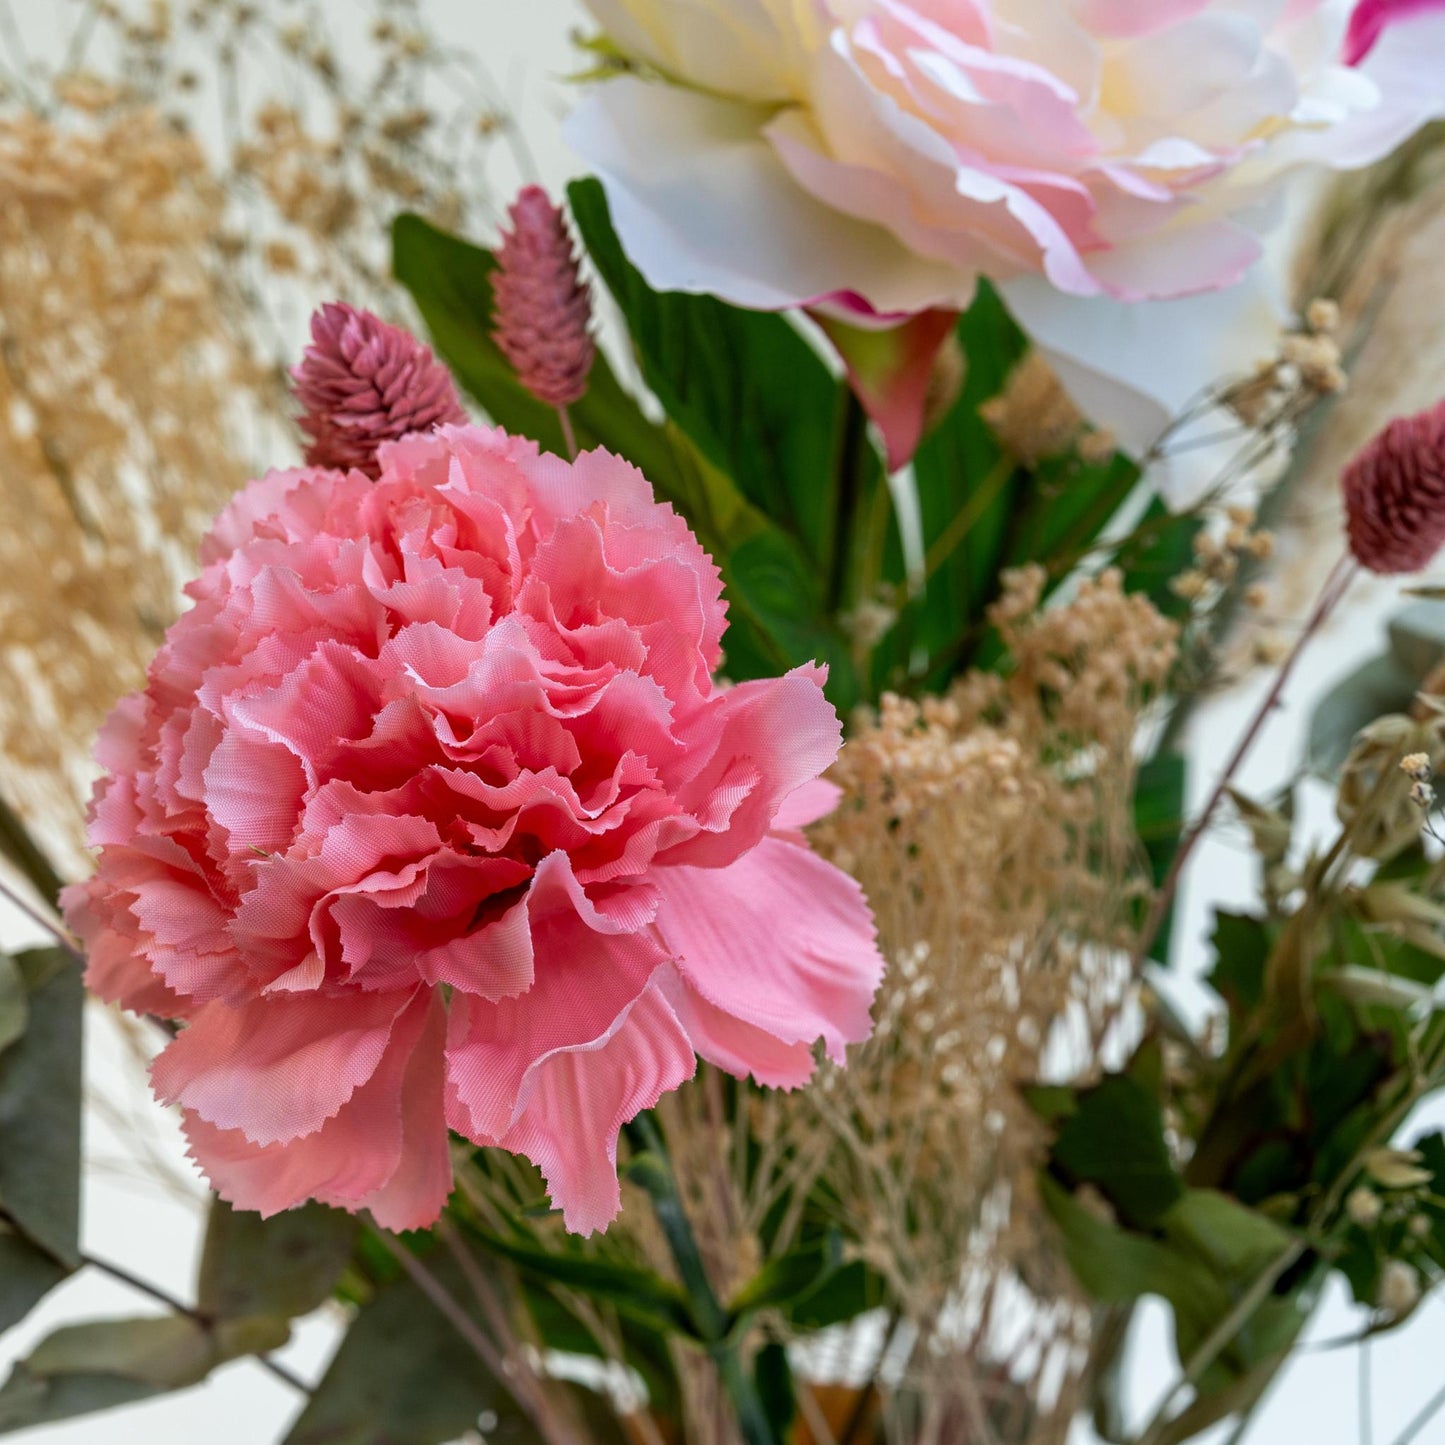 Boeket Prachtig met gedroogde en zijden bloemen in roze en natuurlijke kleuren | 55cm lengte